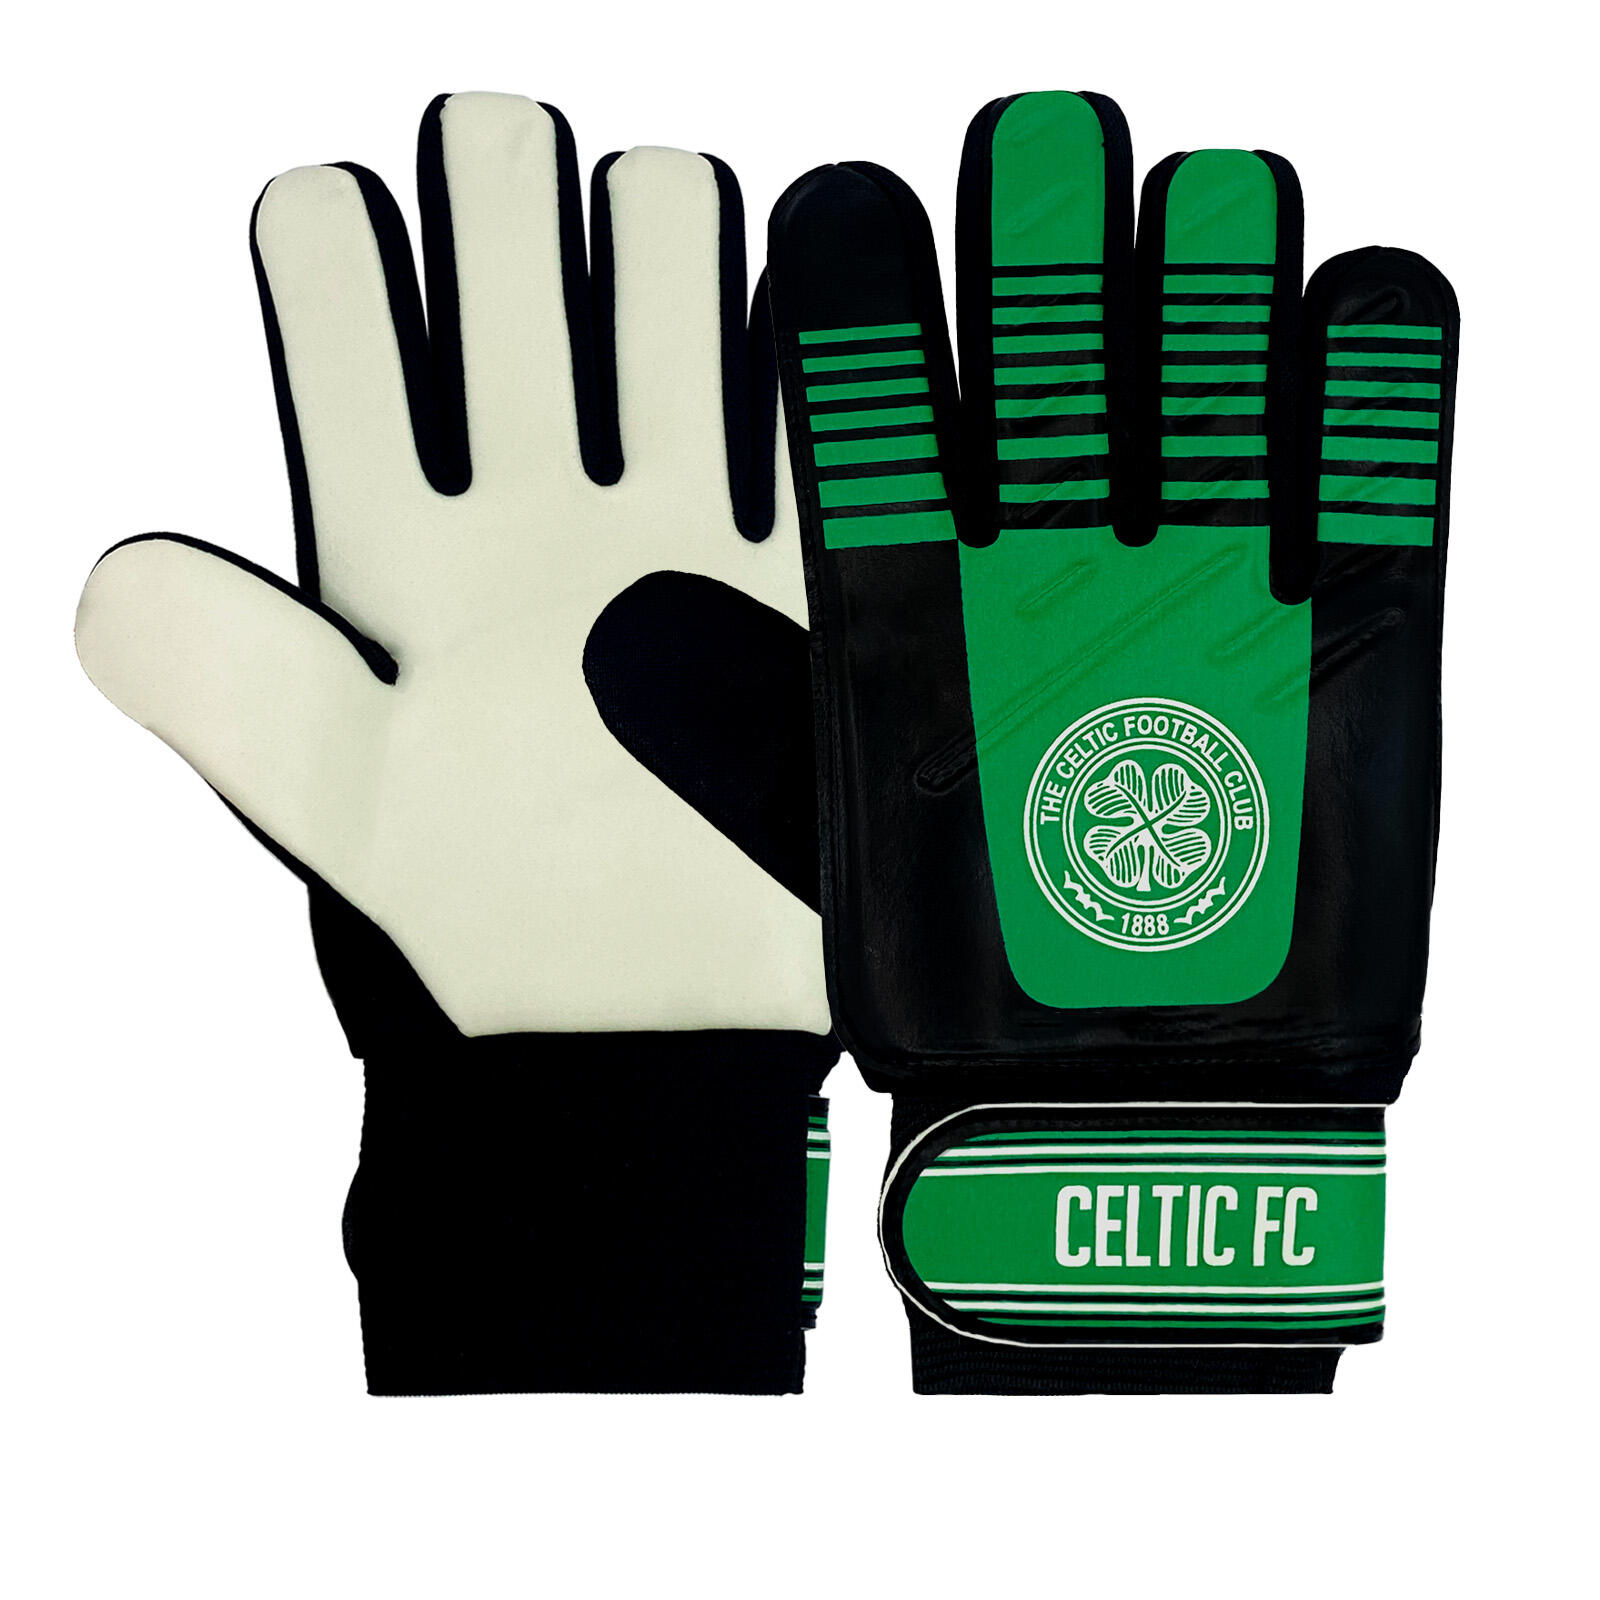 CELTIC FC Celtic FC Boys Gloves Goalie Goalkeeper Kids Youths OFFICIAL Football Gift